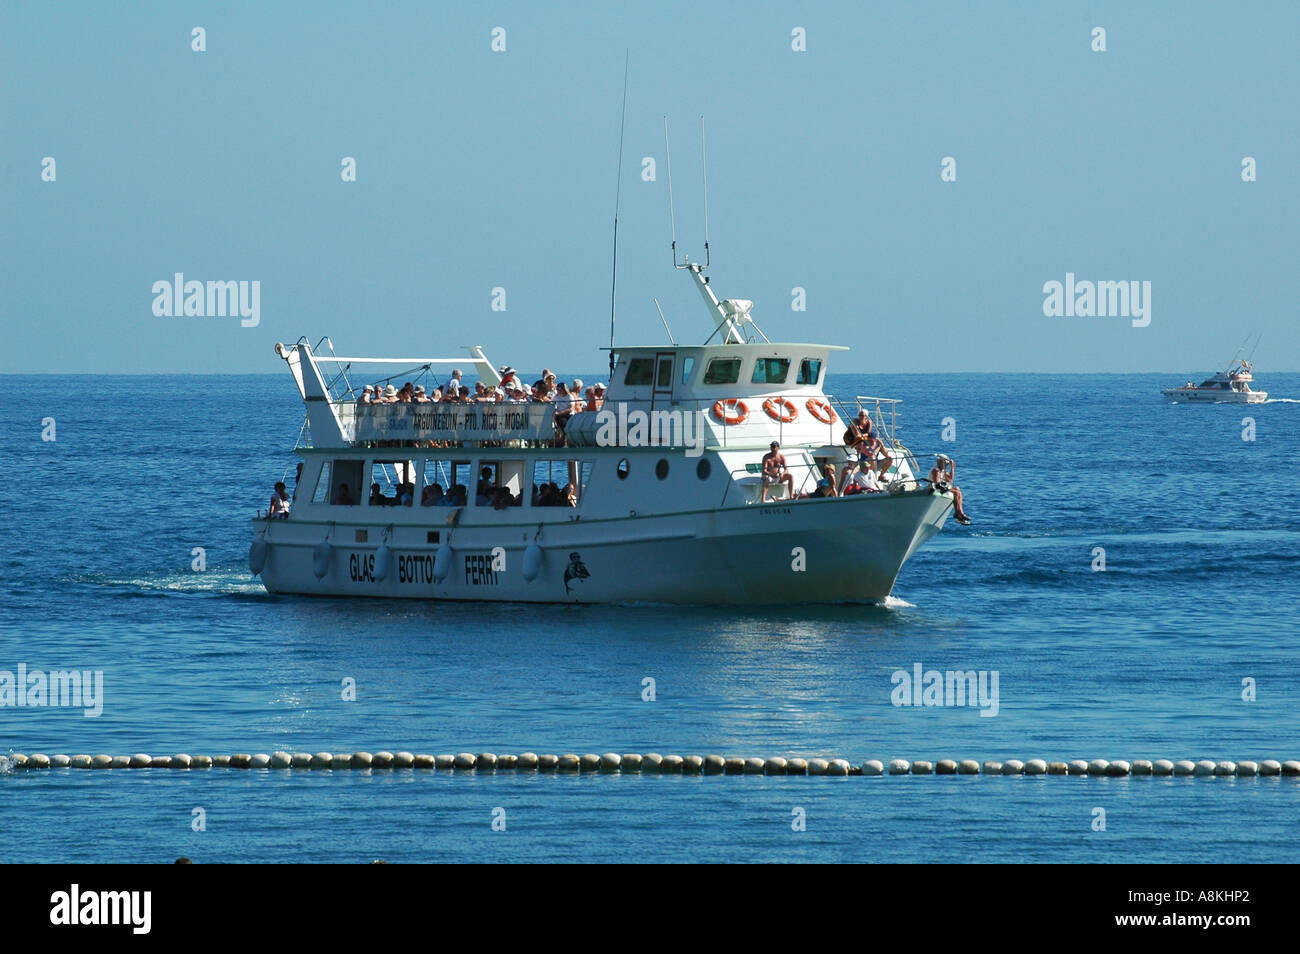 Touristen segeln mit der Fähre von Arguineguin nach Puerto Rico und Puerto  de Mogan auf Gran Canaria, einer der Kanarischen Inseln Spaniens  Stockfotografie - Alamy